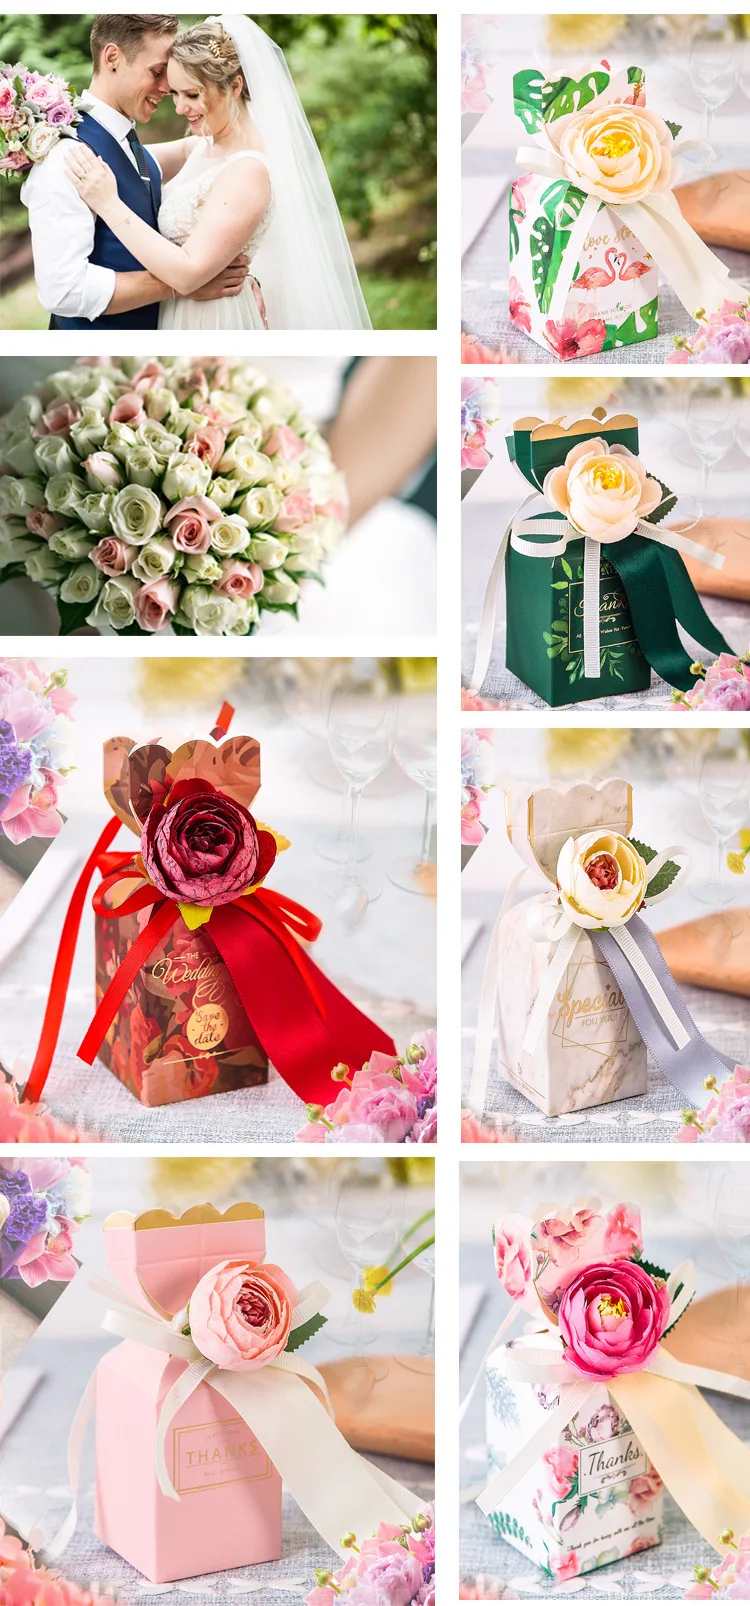 Перепелиные 20 шт DIY Свадебные сувениры конфеты коробки с лентой и цветком/фламинго для помолвки, прием гостей в доме невесты, лес зеленый